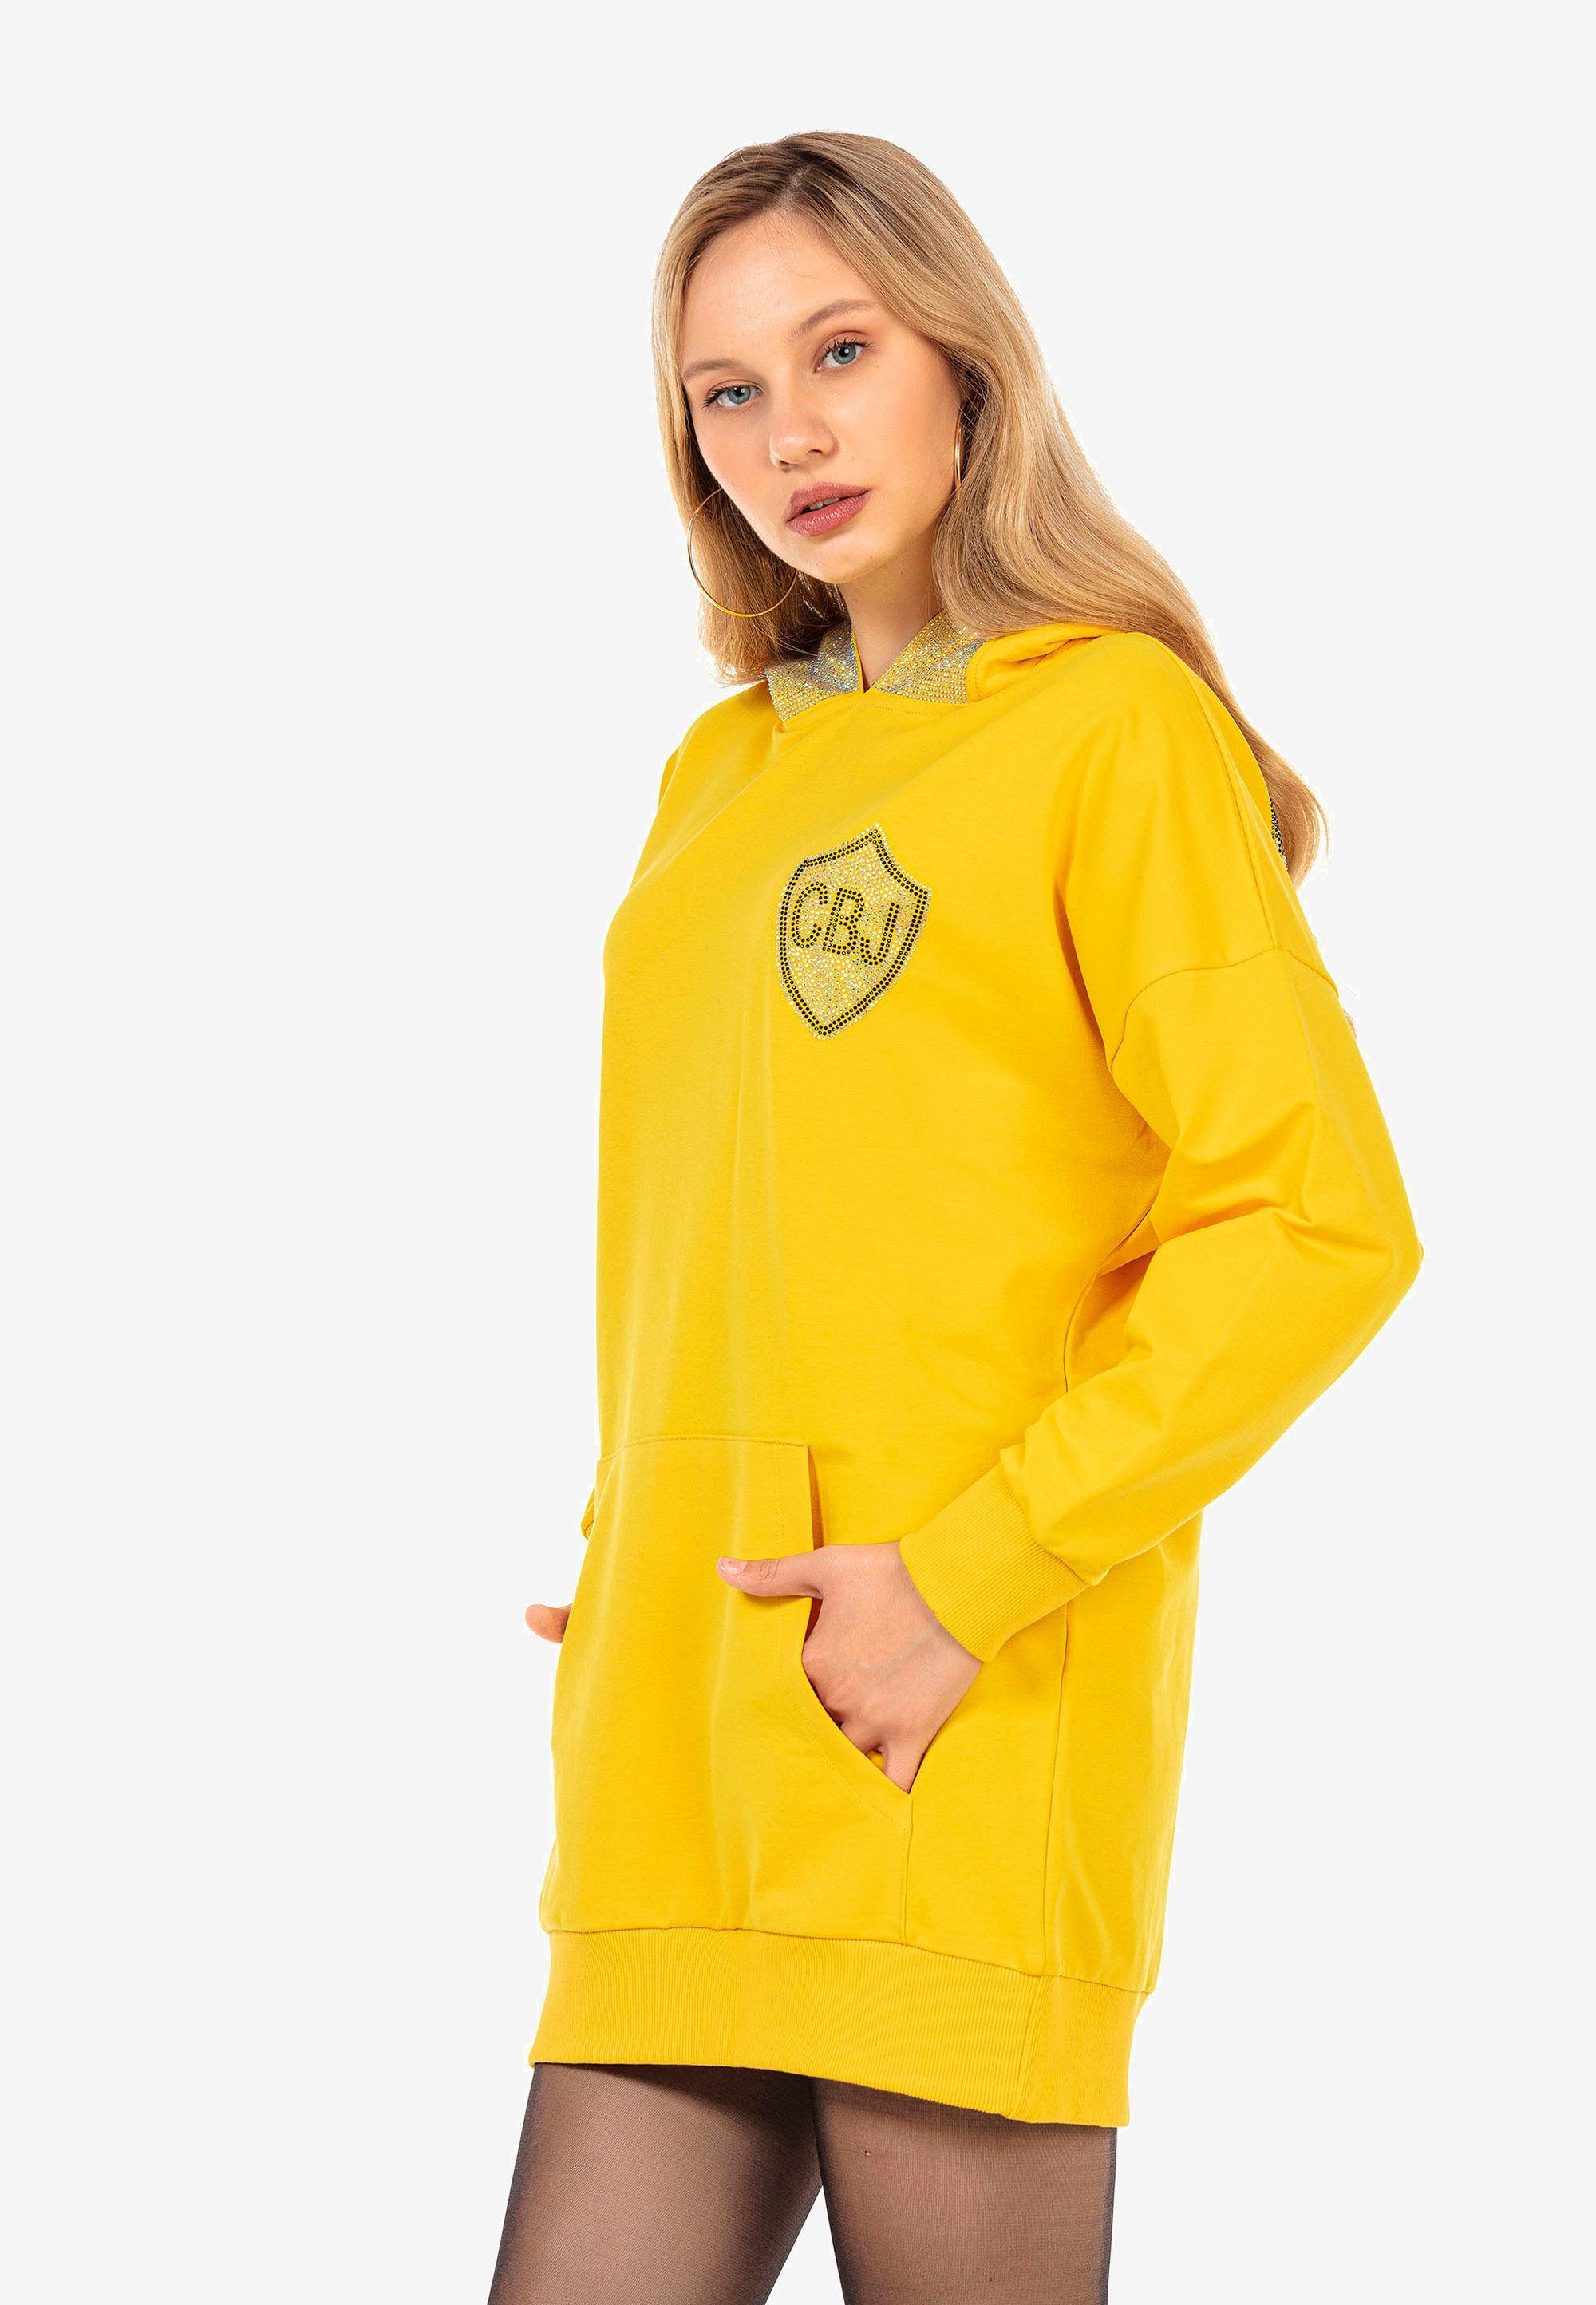 Jerseykleid gelb Cipo & Strass-Design mit Baxx aufwendigem